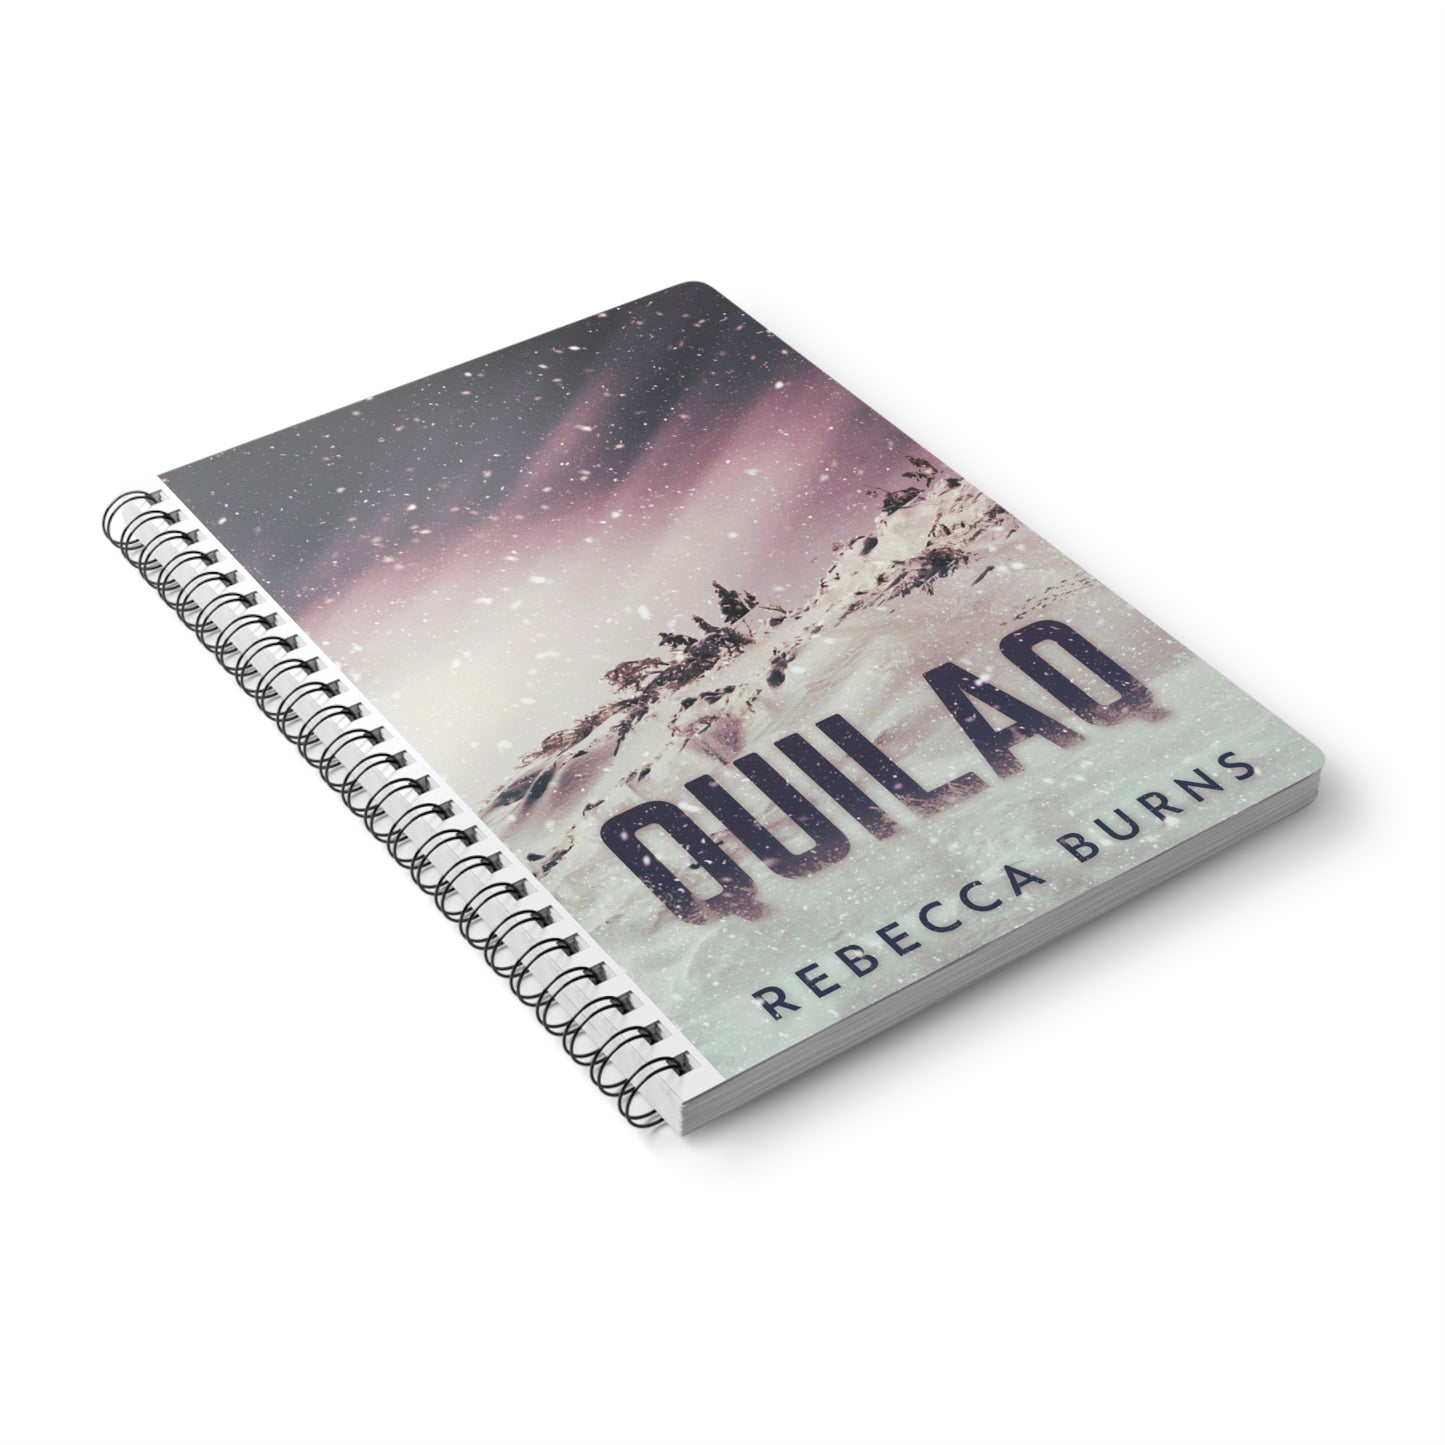 Quilaq - A5 Wirebound Notebook